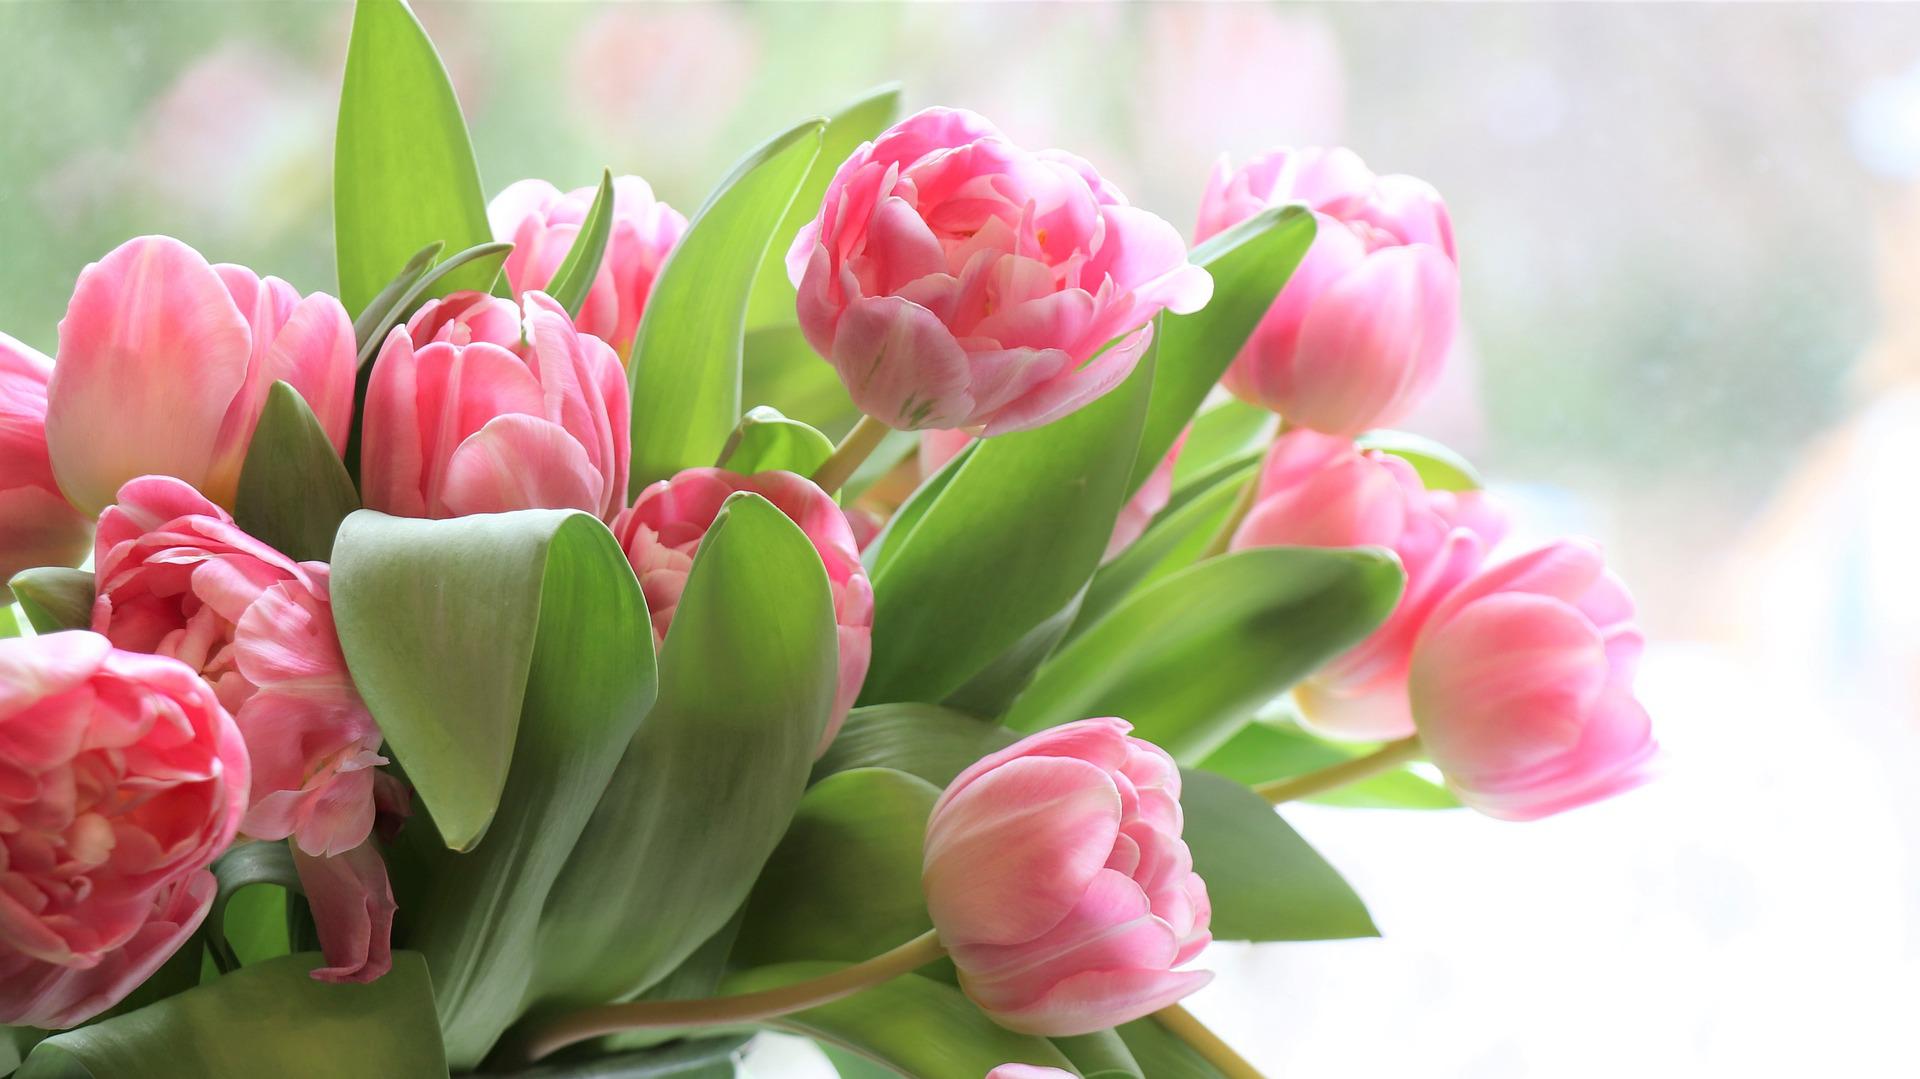 Tulpen zum Muttertag